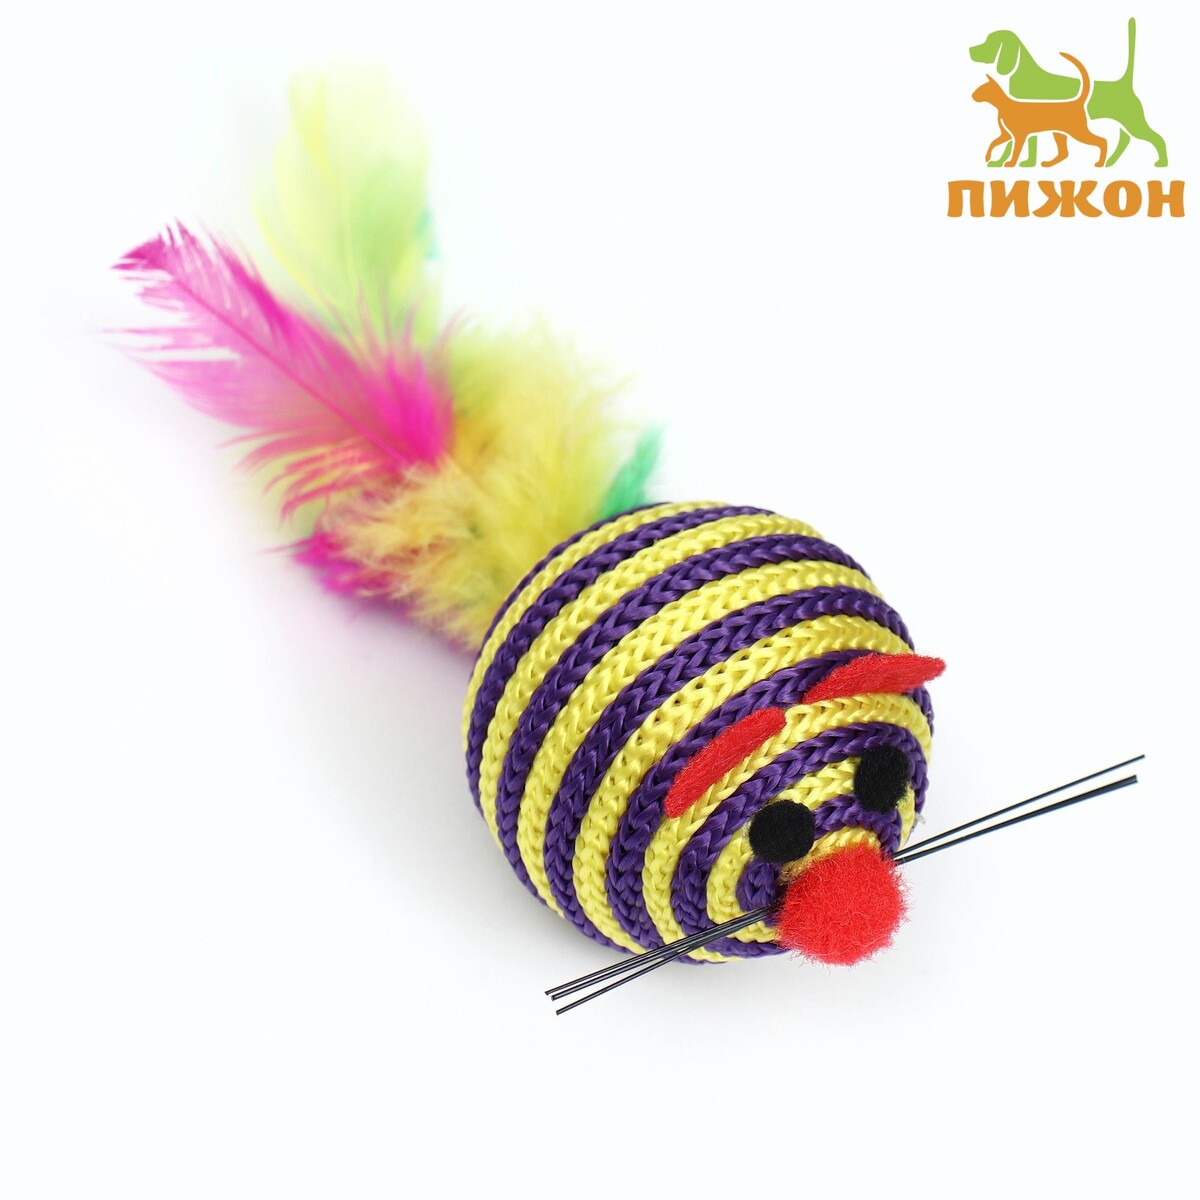 Шарик-мышь из текстиля с перьями, 4,2 см, фиолетовая всезнайка мышь ноб